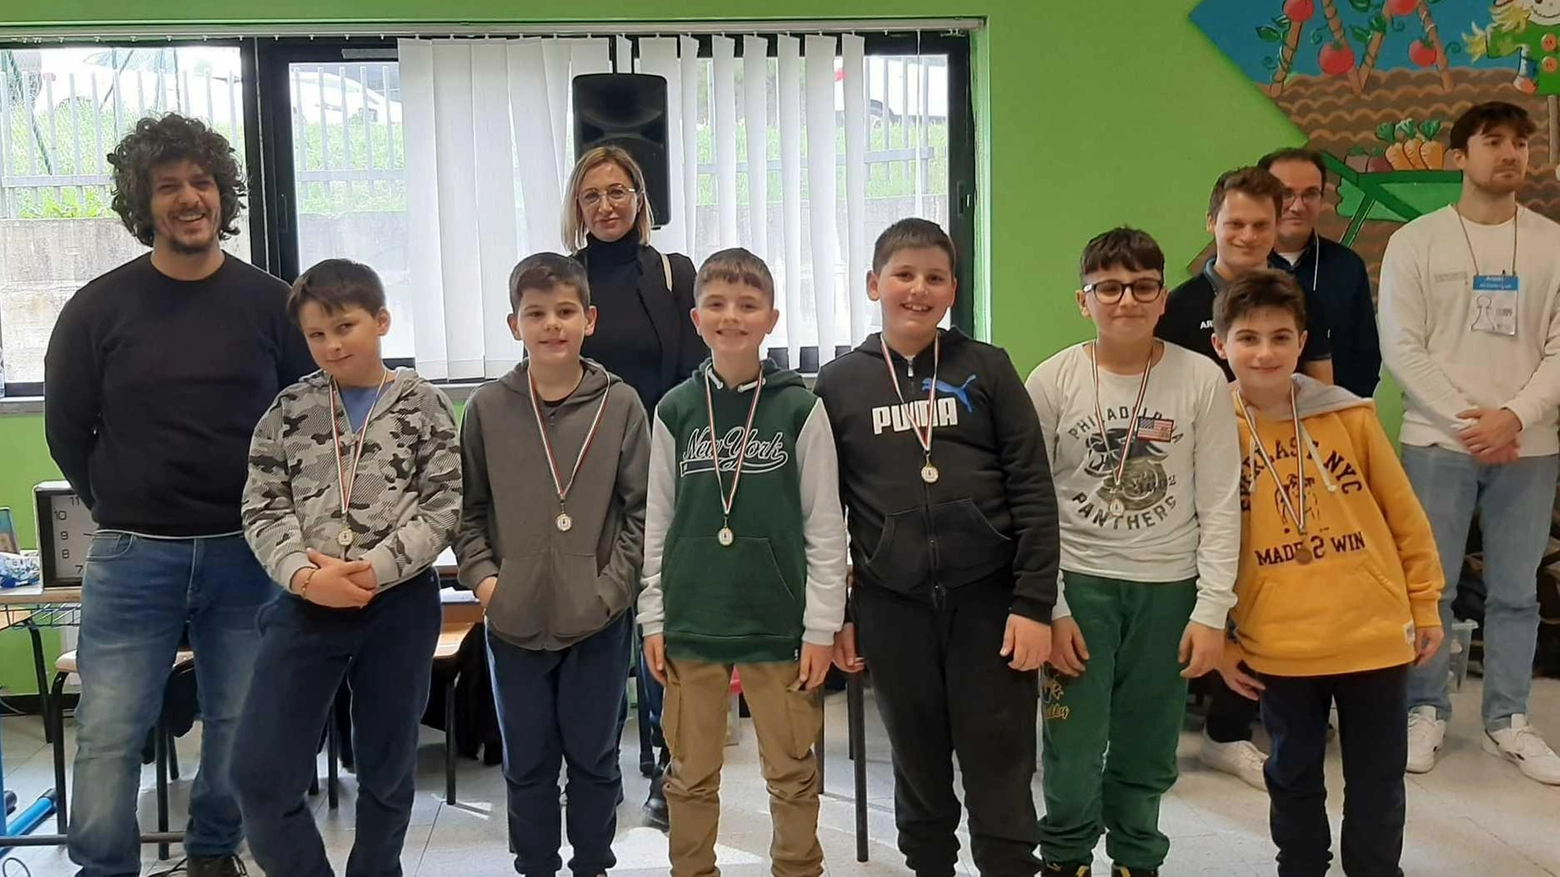 Edizione record dei campionati regionali studenteschi di scacchi a Tolentino: scuole marchigiane si qualificano per la fase nazionale a Montesilvano.